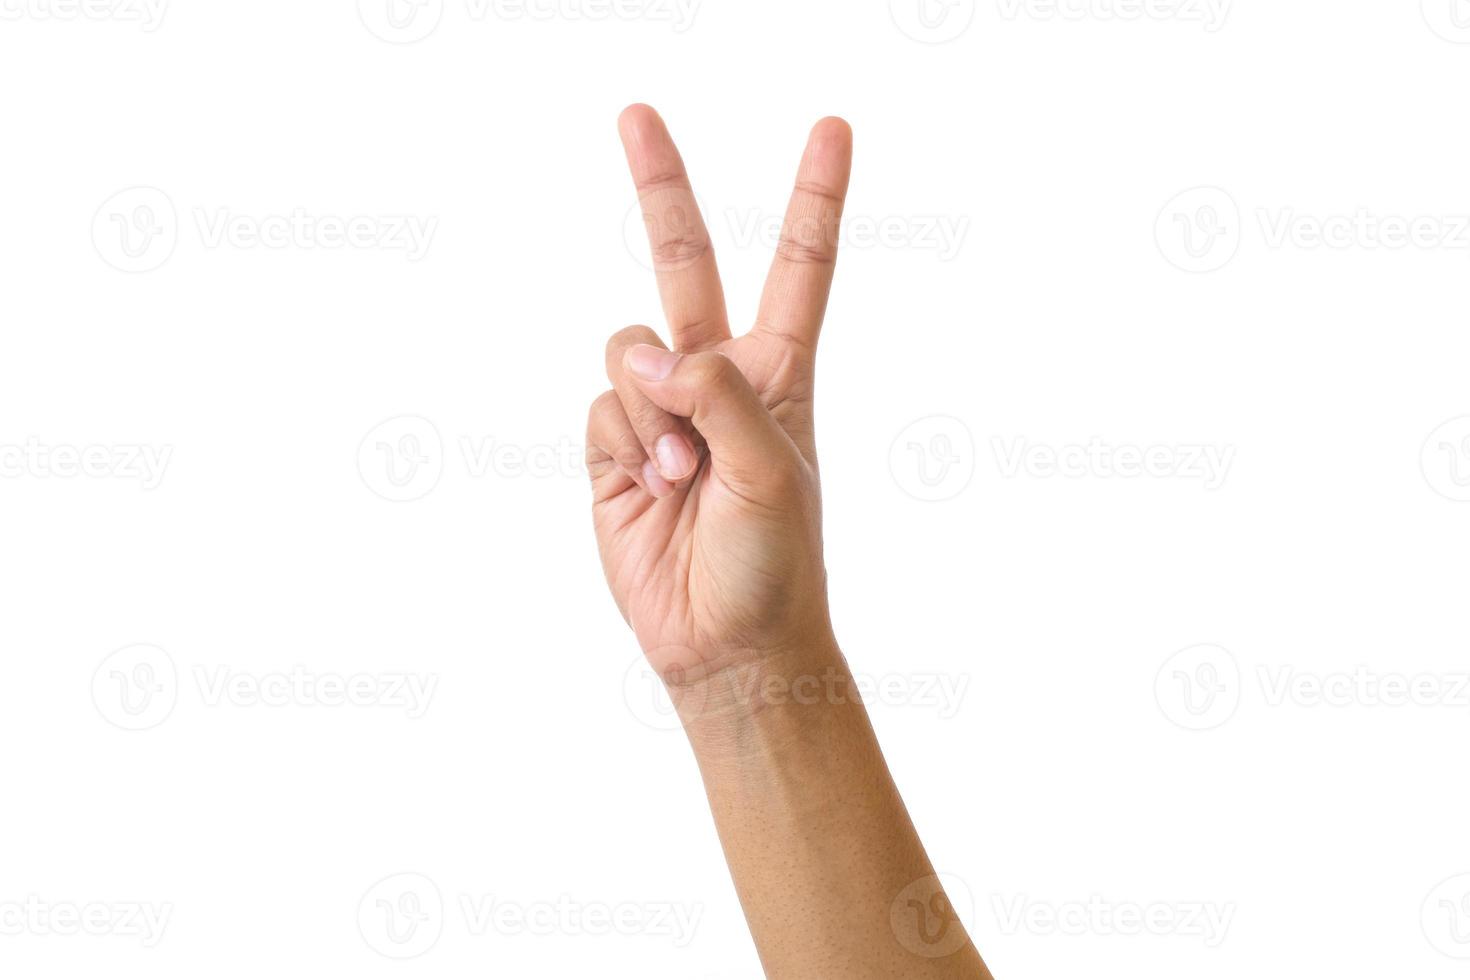 isoliertes Handzeichen auf weißem Hintergrund, männliche erwachsene Hand, die ein Friedenszeichen mit zwei Fingern macht foto